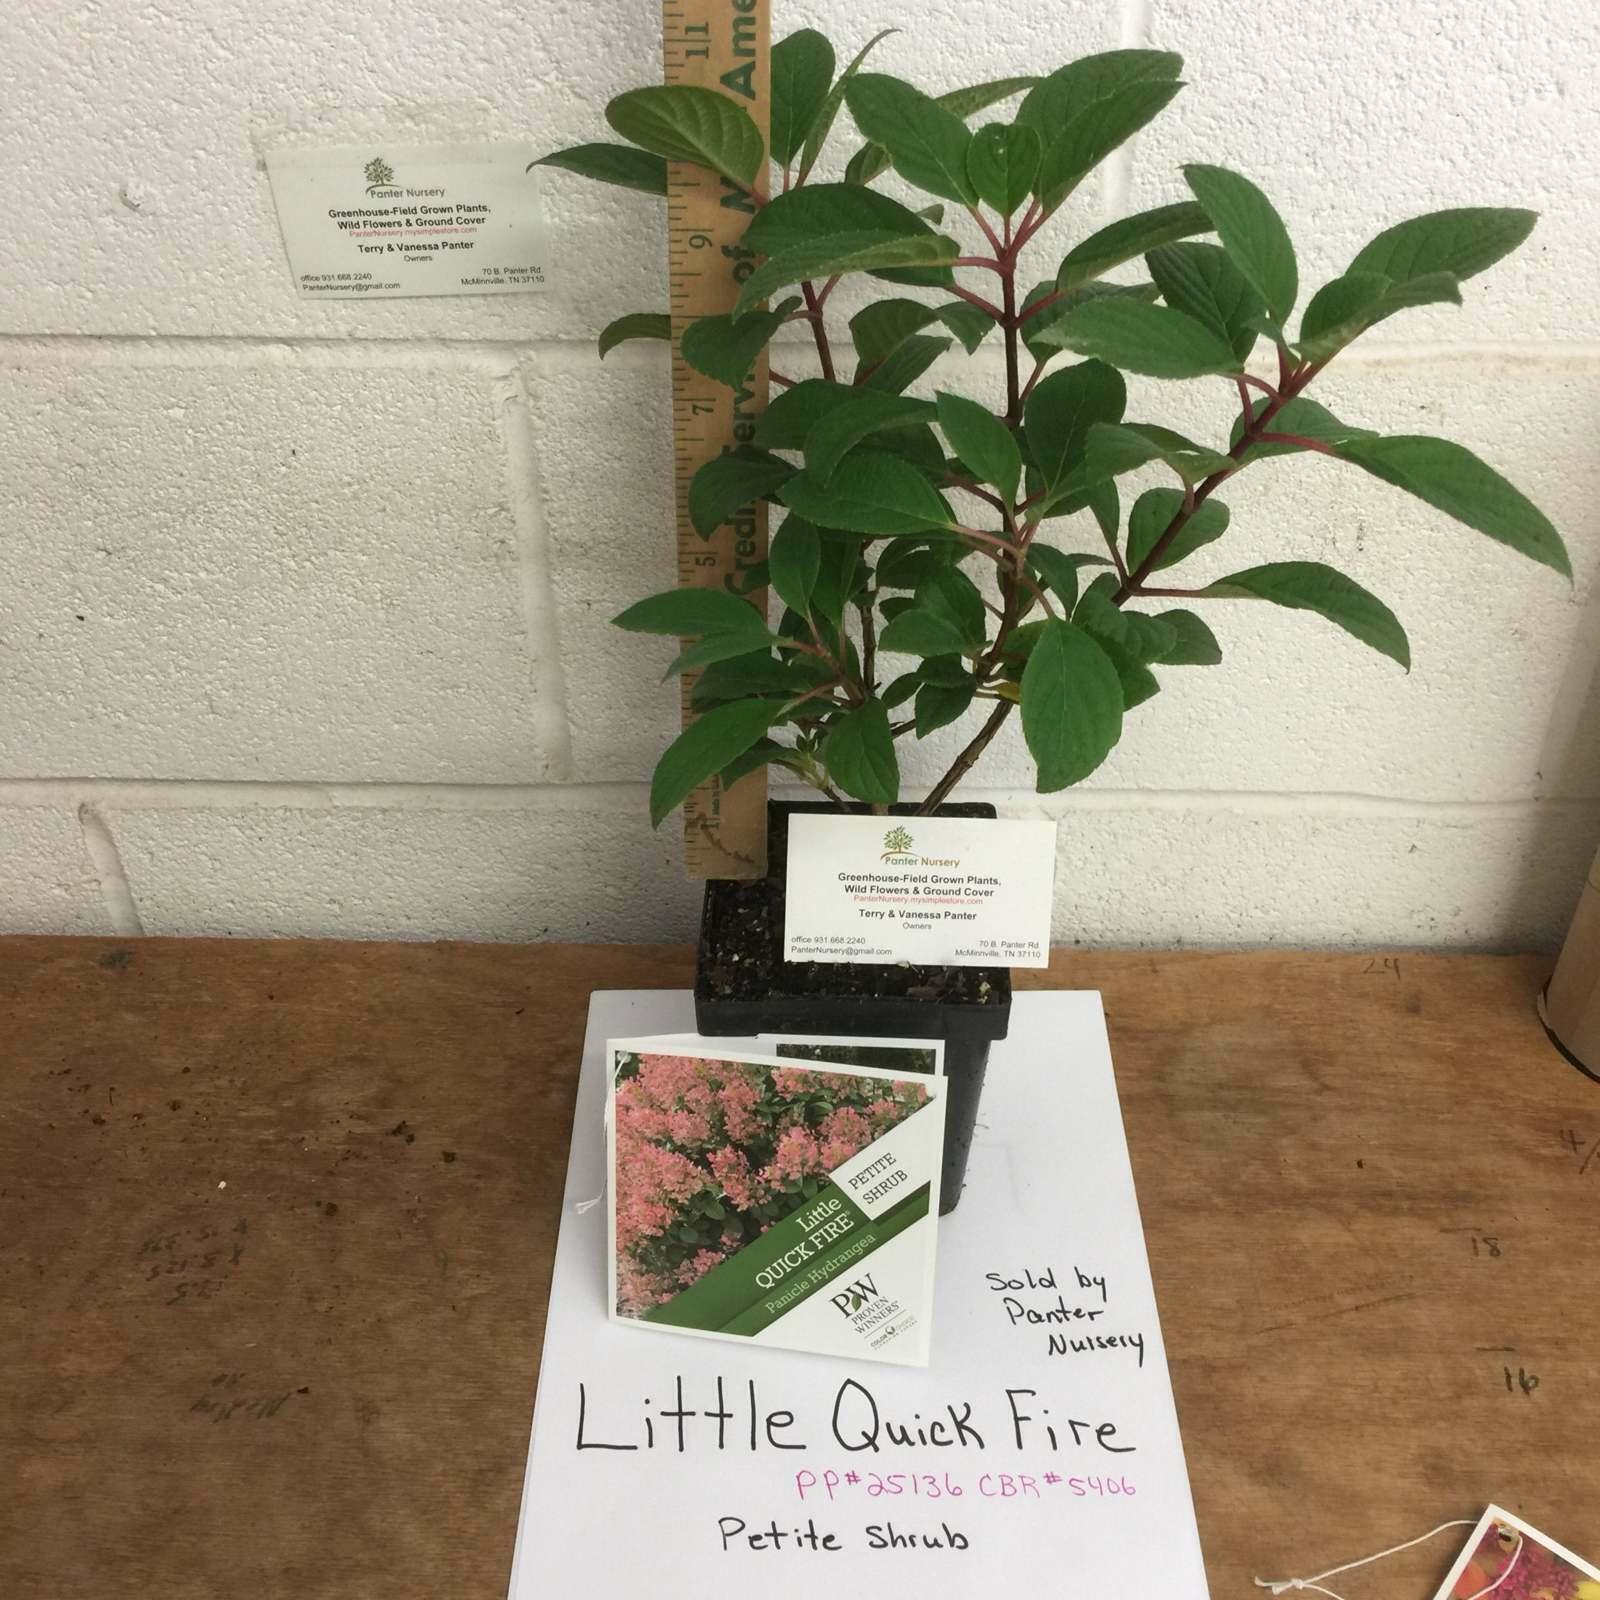 2 Little Quick Fire Panicle Hydrangea Petite Dwarf Shrubs, 6-12" Tall, Quart Pot - The Nursery Center